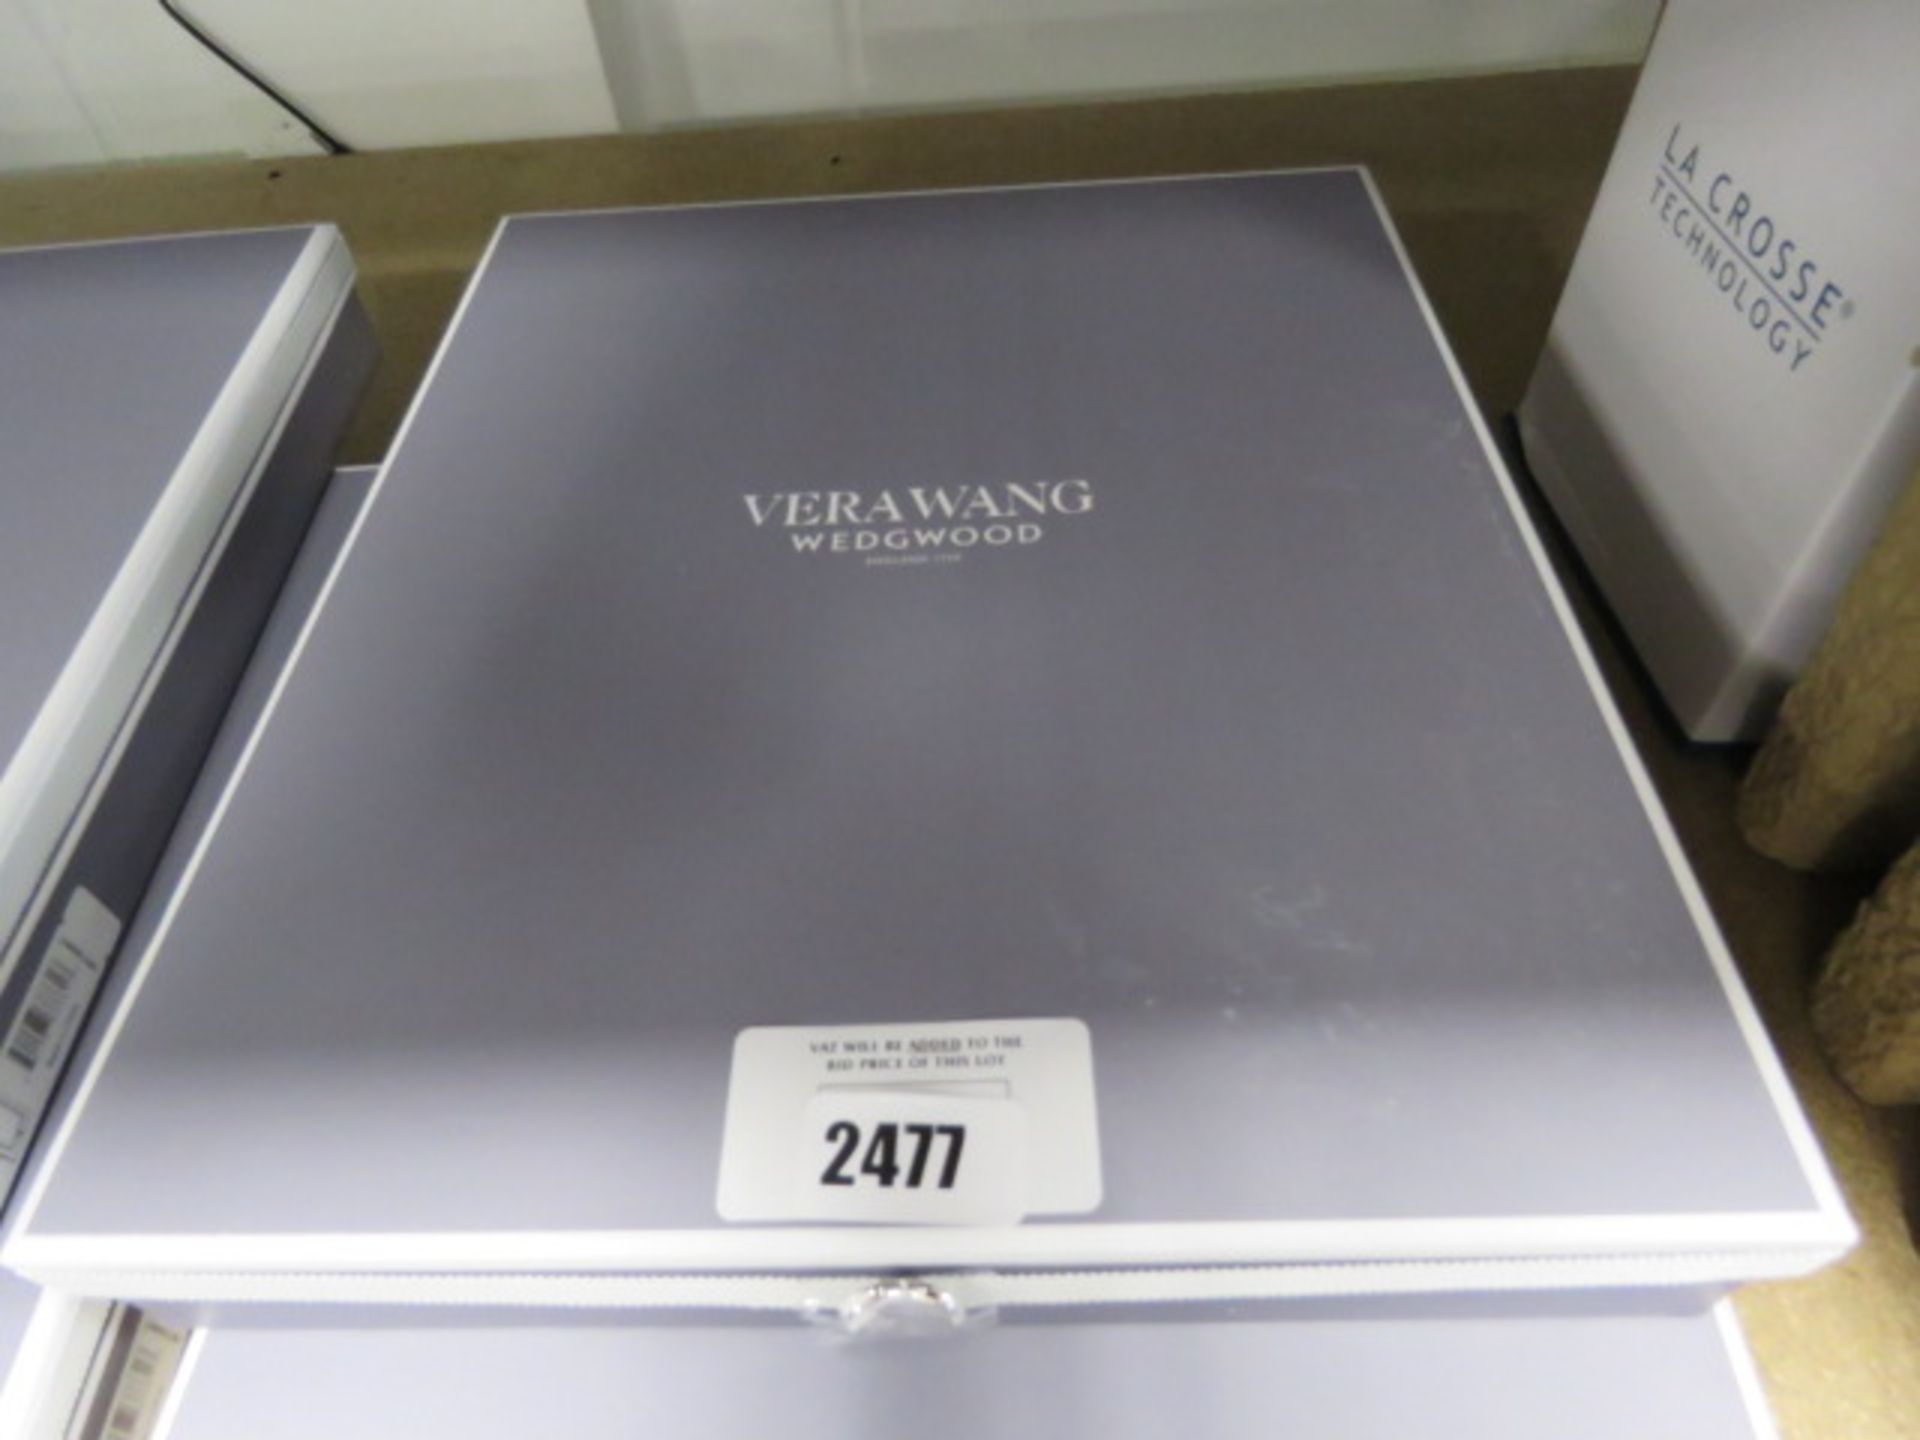 Vera Wang wedgwood 8x10 photo frame in box